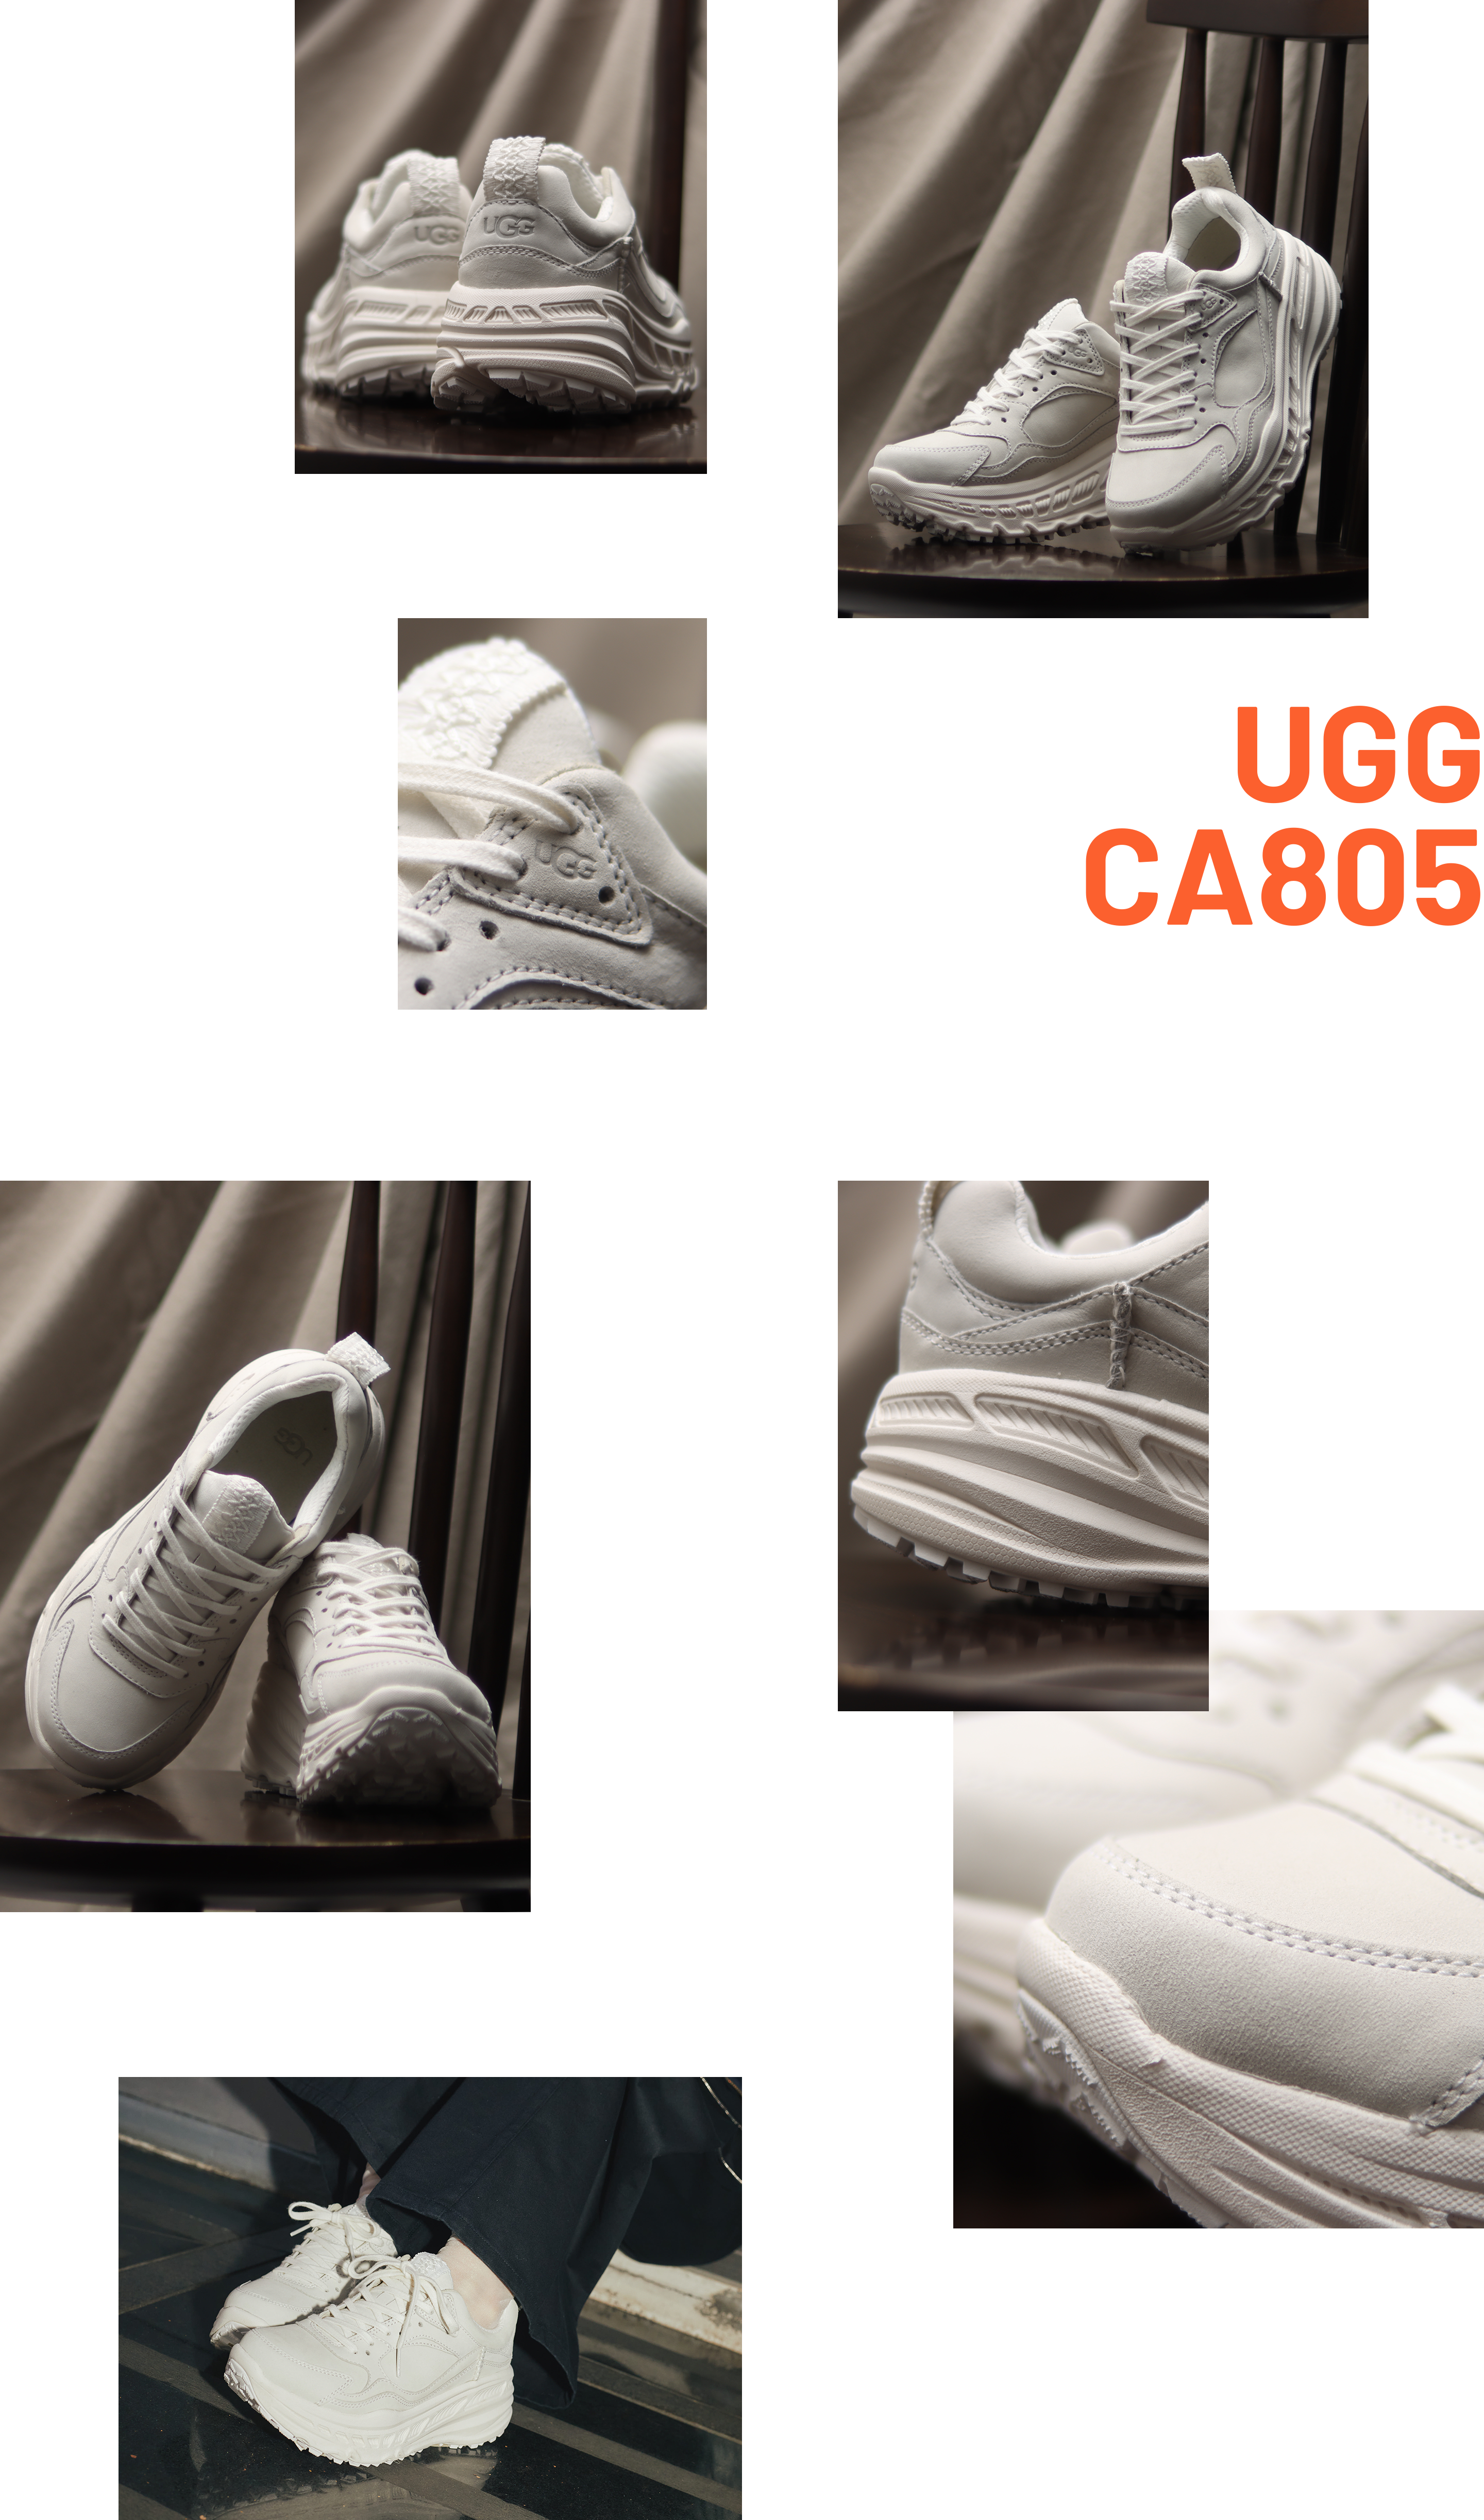 UGG CA805 atmos Exclusive